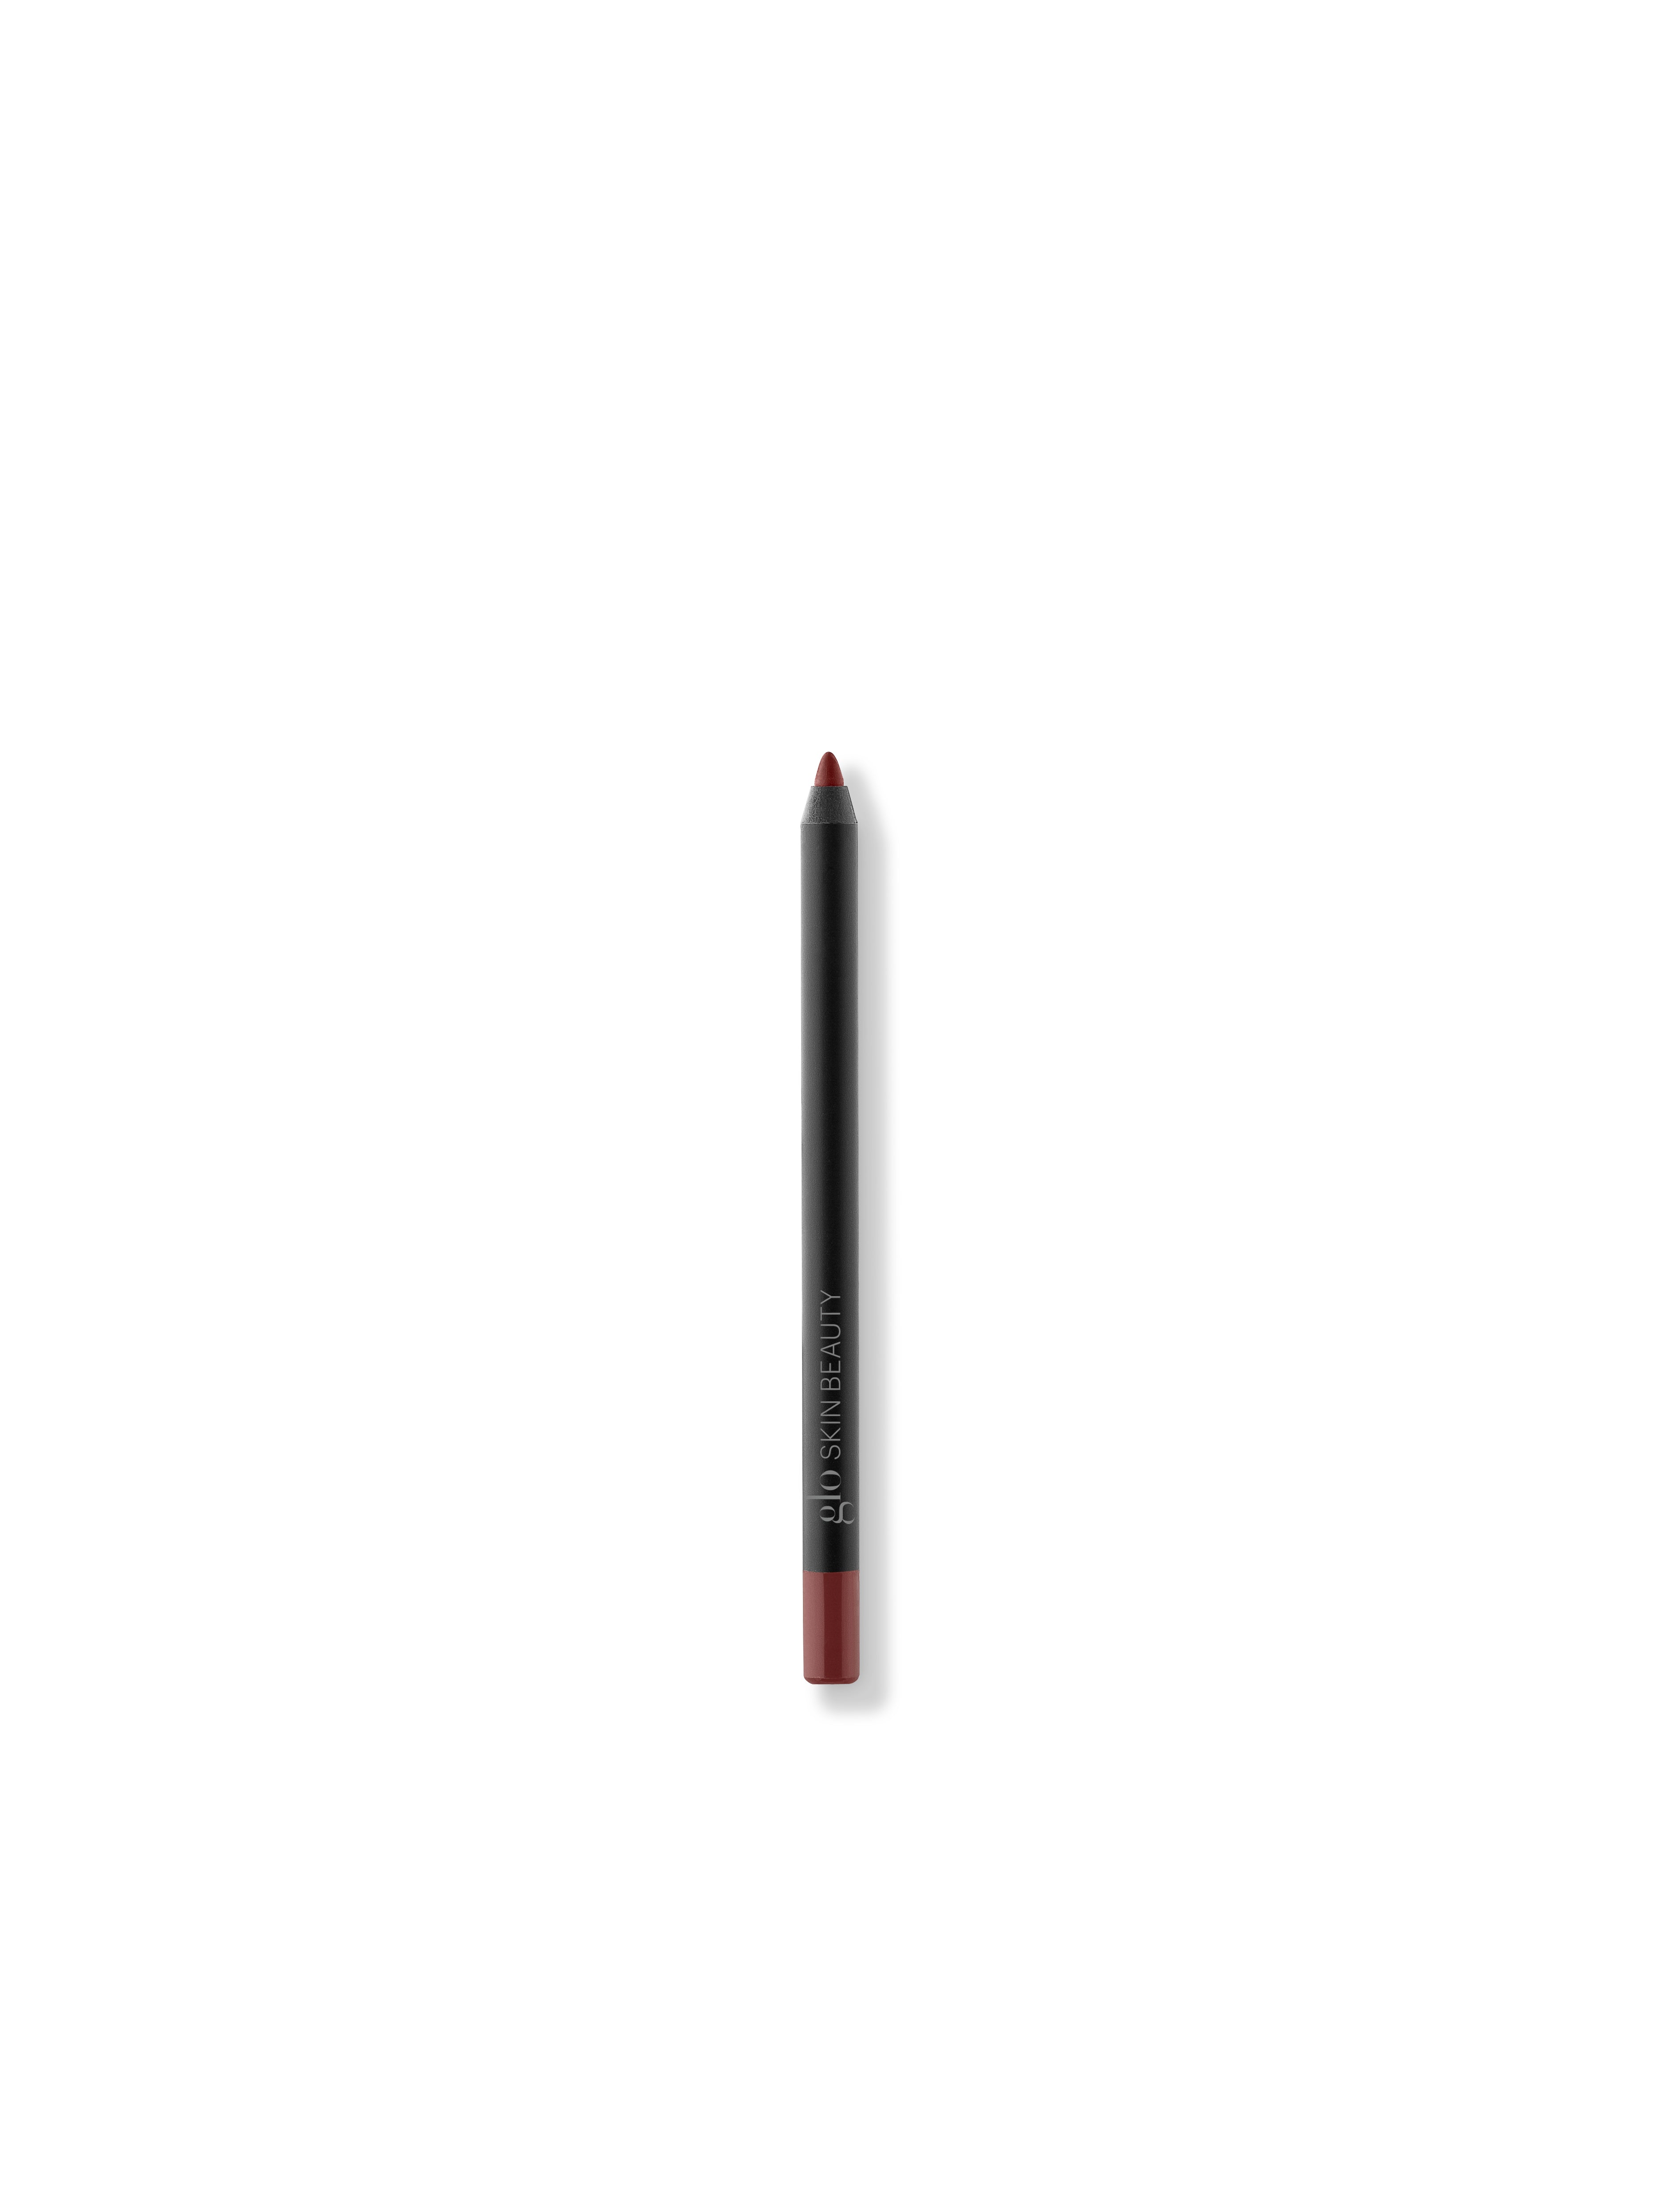 Precision Lip Pencil